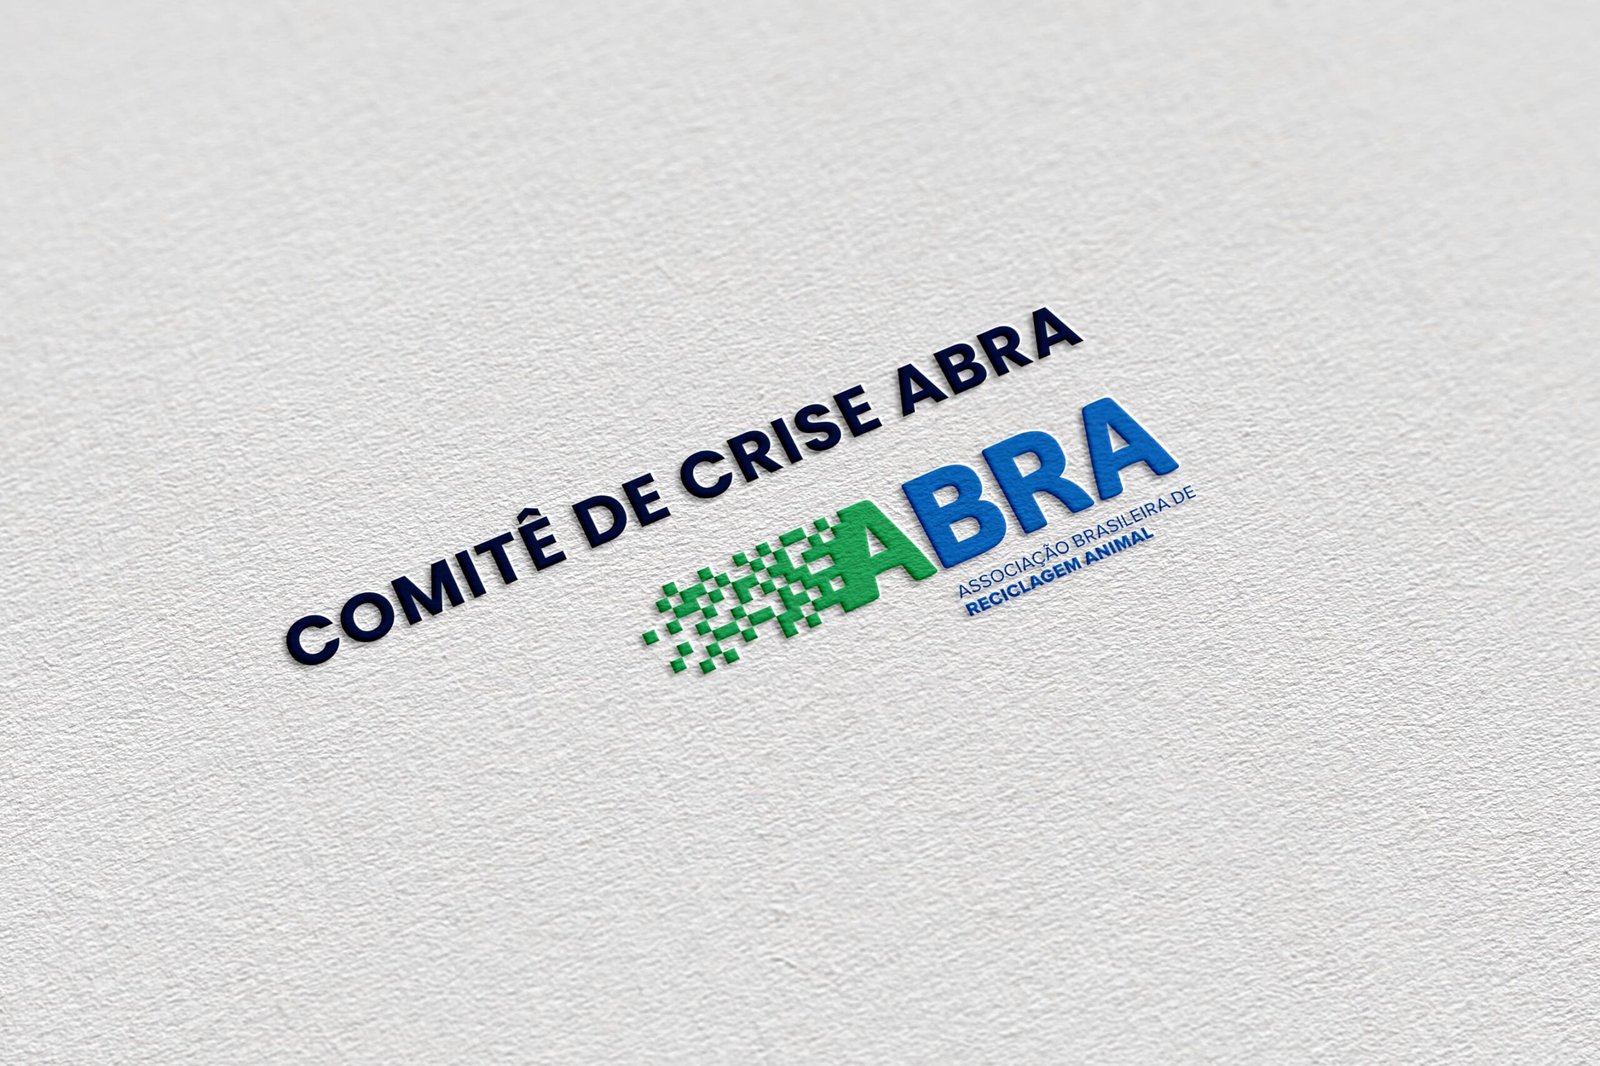 Comitê de Crise da ABRA avalia estrutura legal de normativas aplicadas ao setor